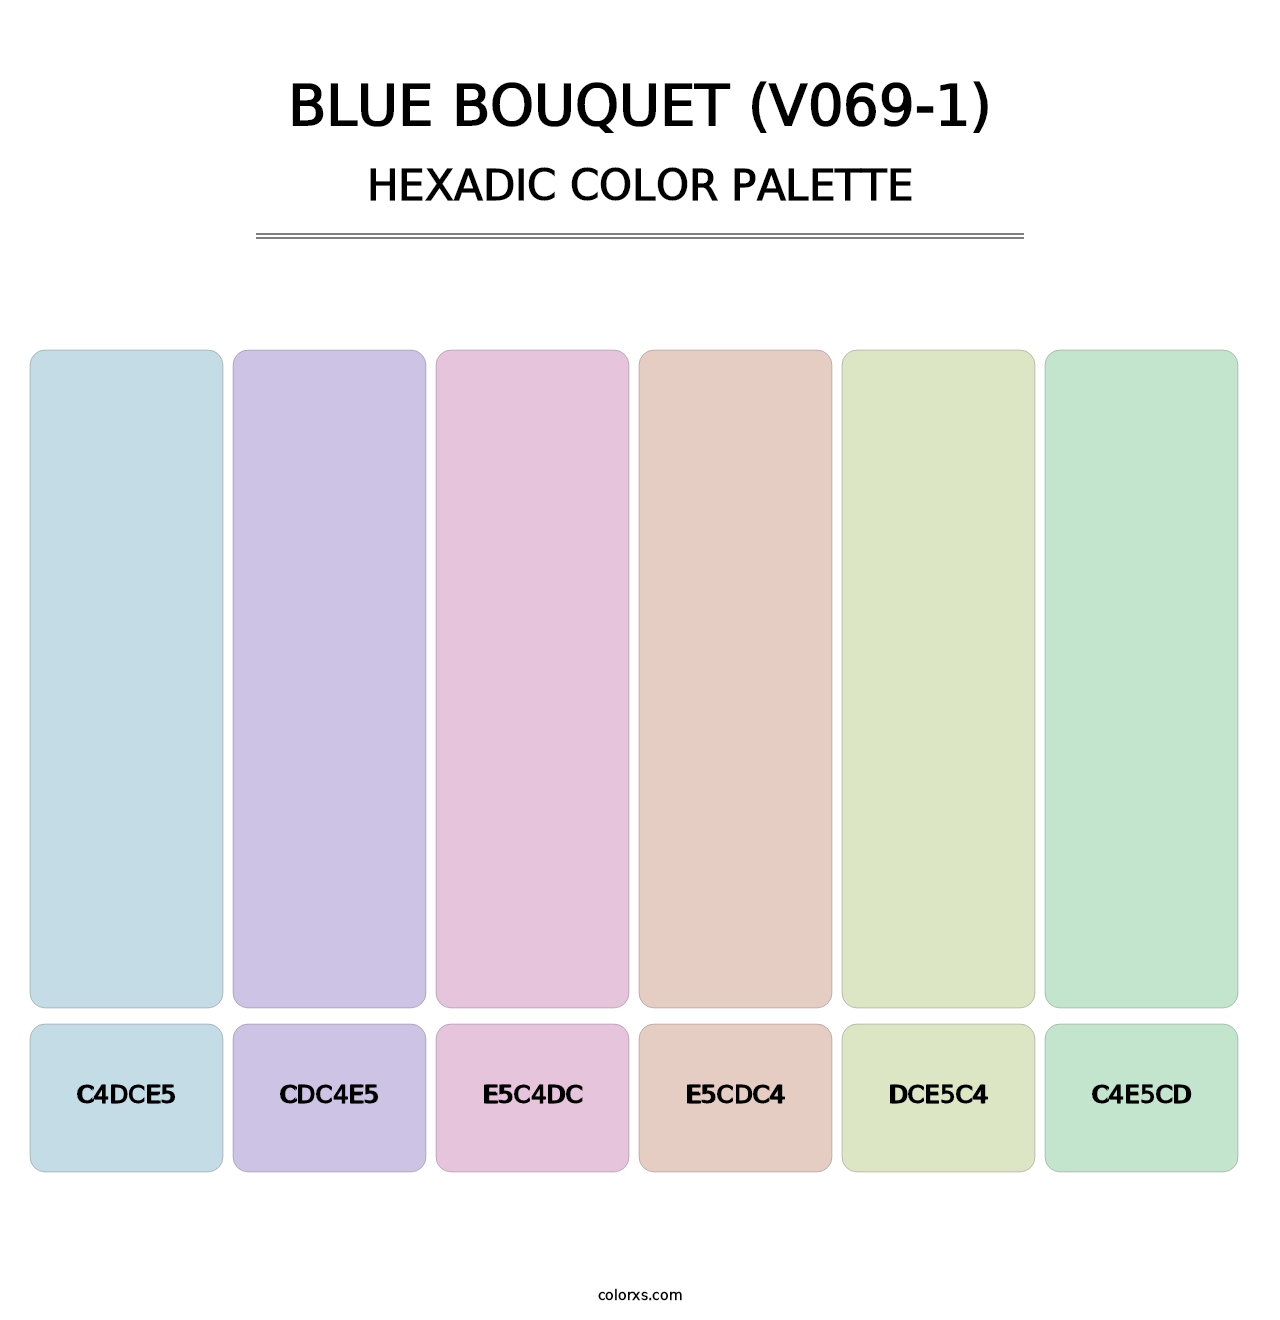 Blue Bouquet (V069-1) - Hexadic Color Palette